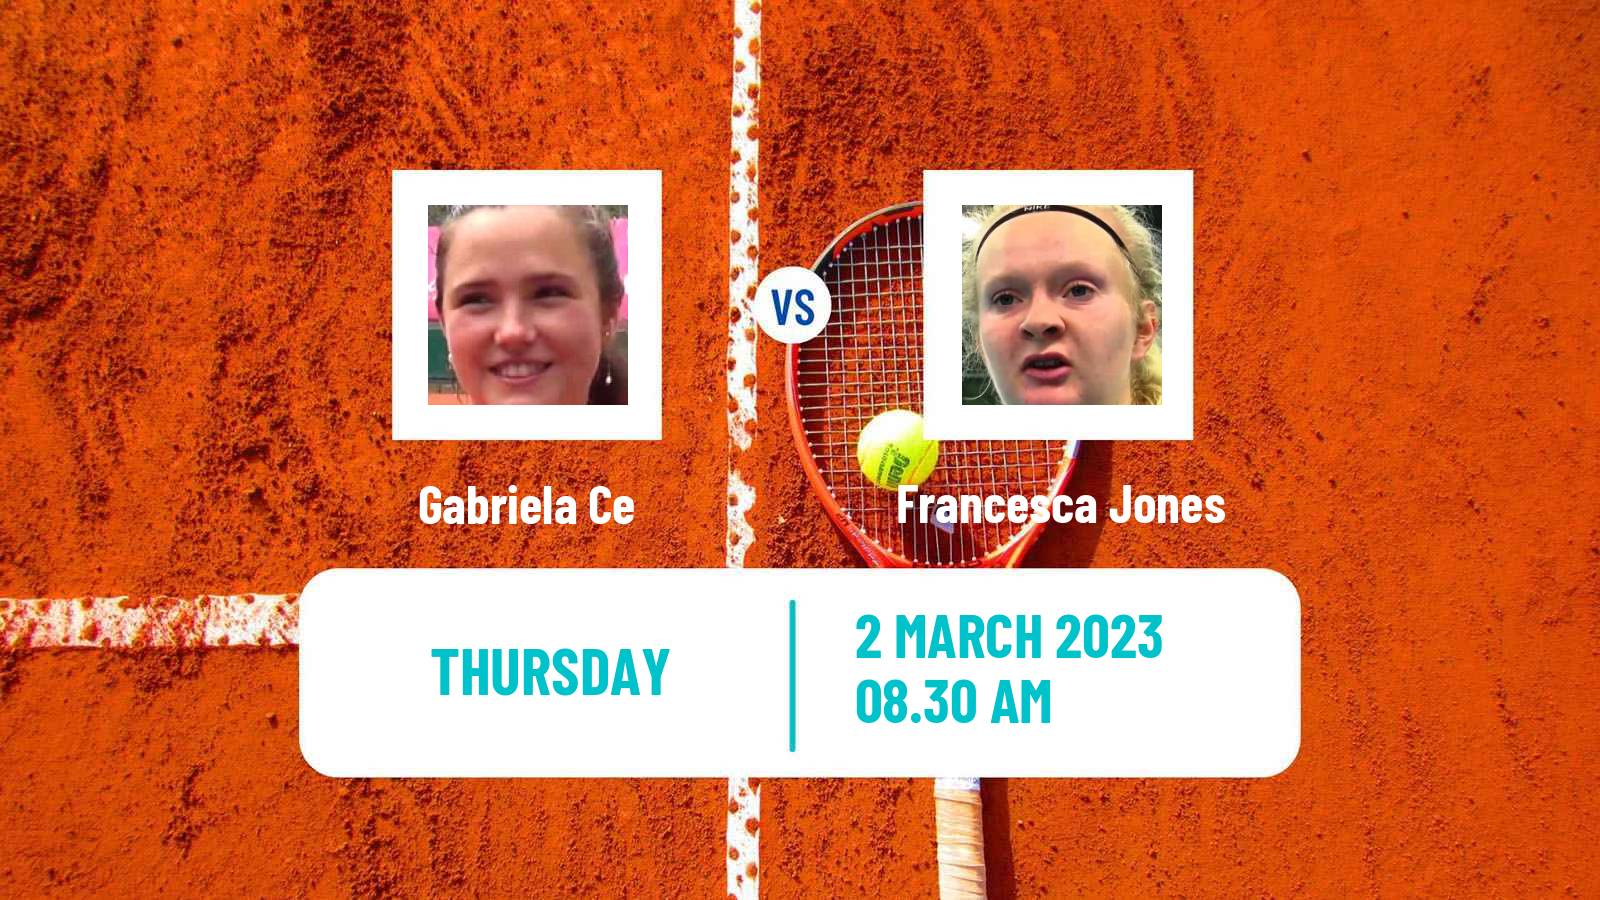 Tennis ITF Tournaments Gabriela Ce - Francesca Jones